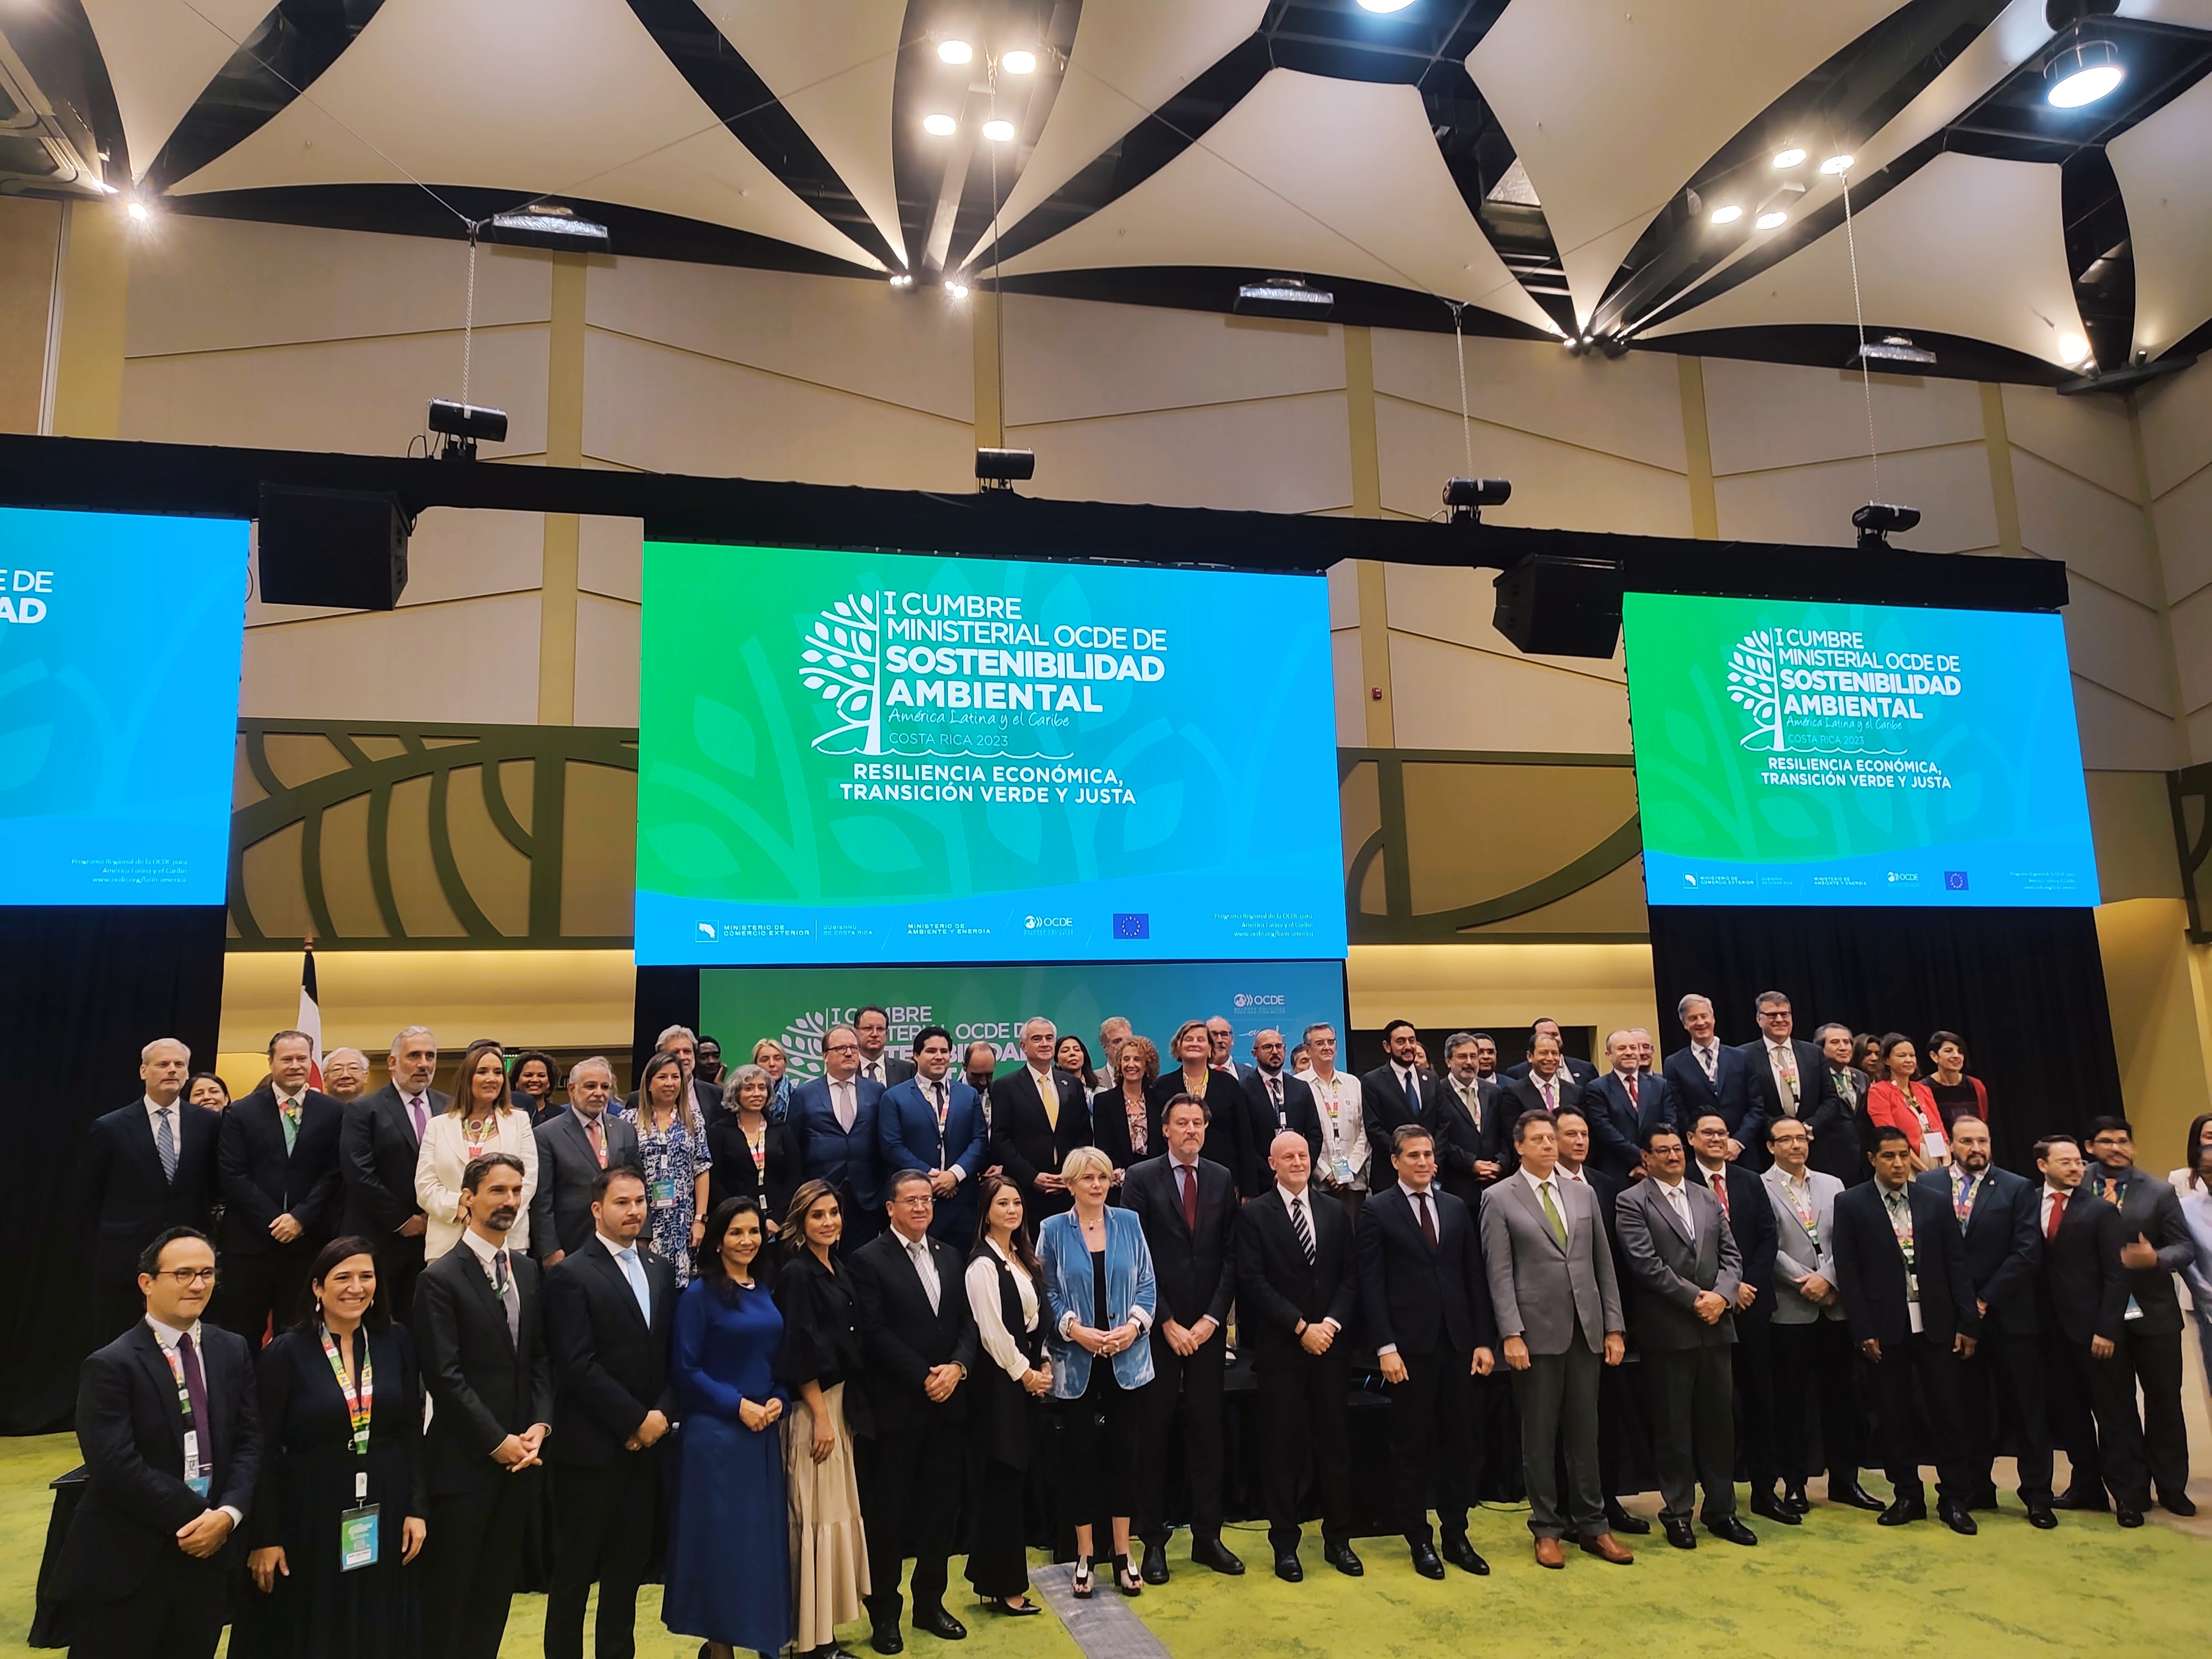 La OEI participa en la I Reunión Ministerial sobre Sostenibilidad Ambiental de la OCDE